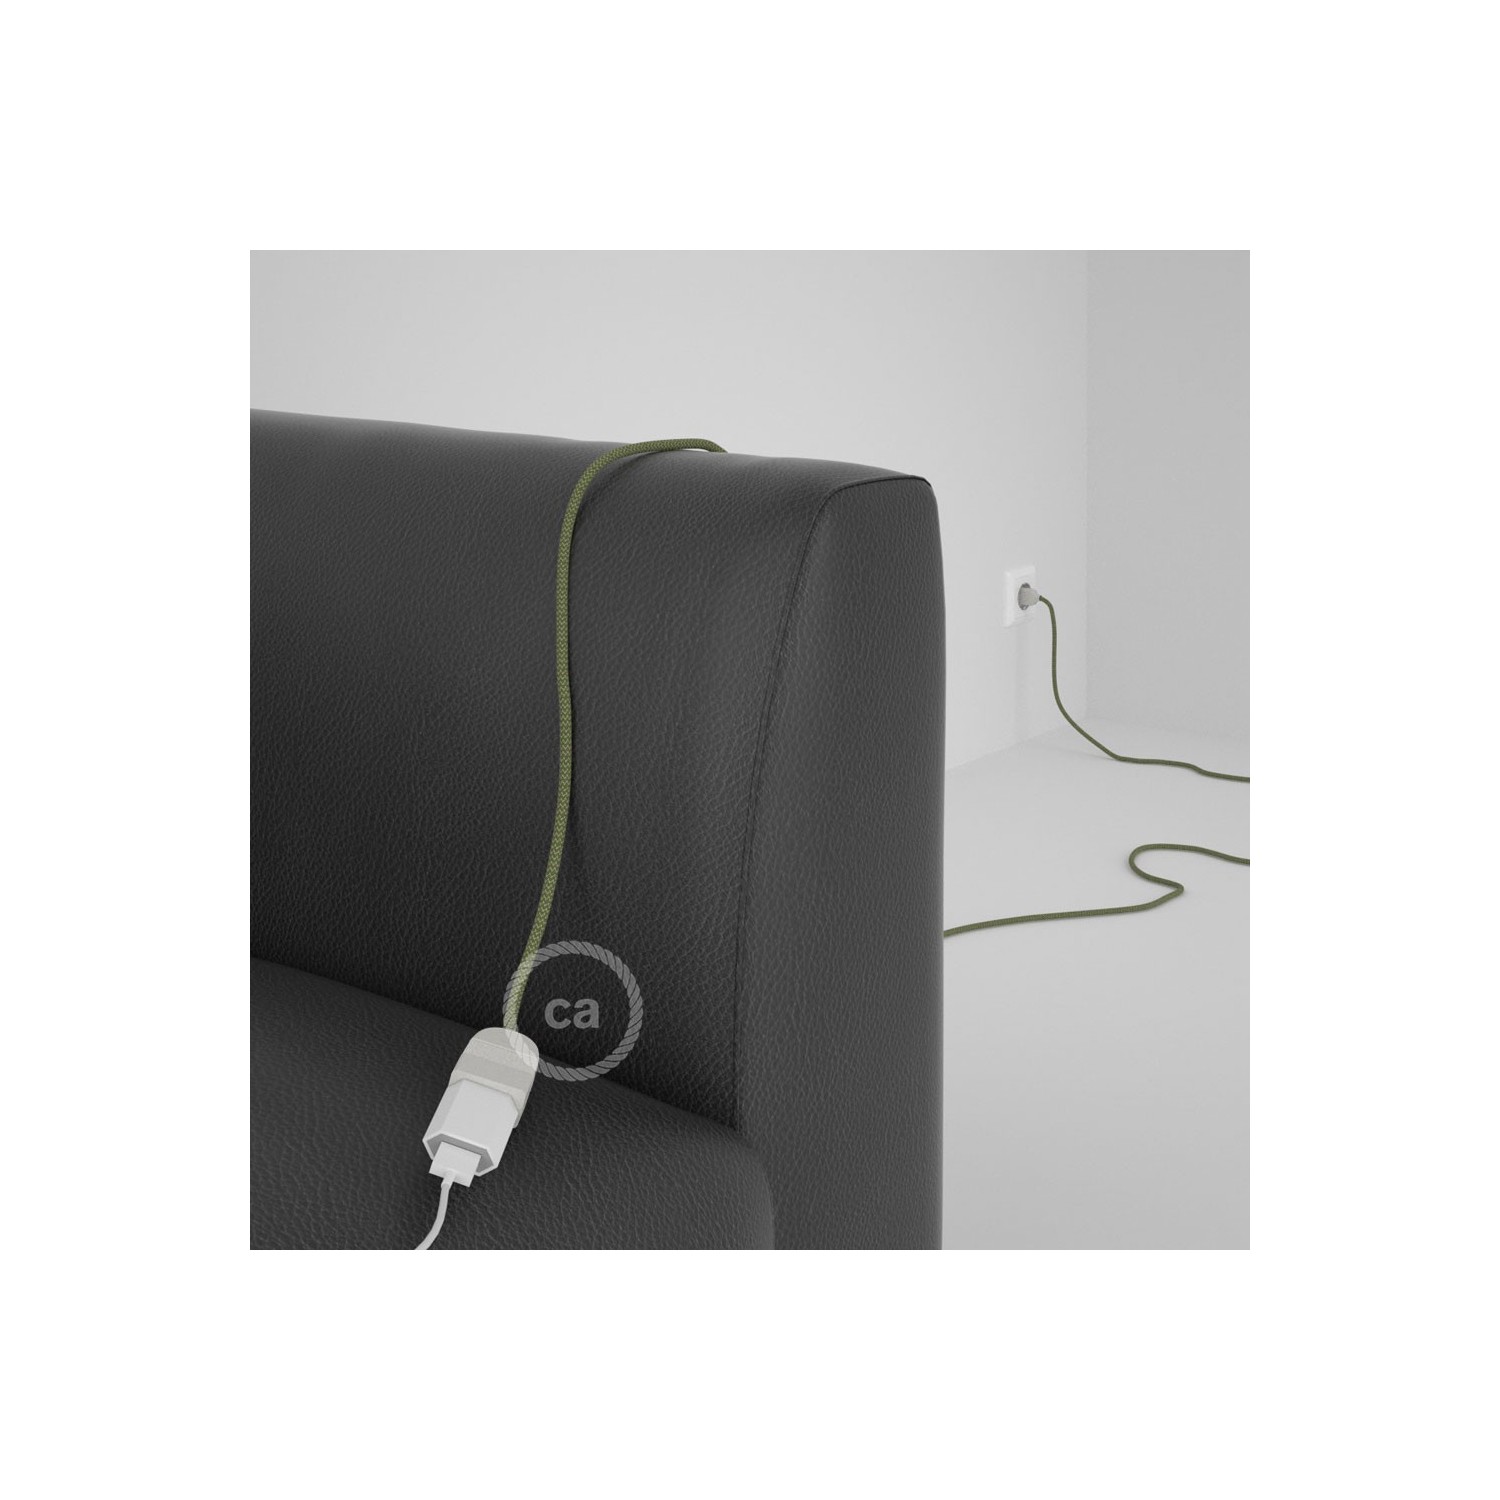 Podaljševalni kabel za napajanje (2P 10A) zigzag, timijan zeleni naravni lan in bombaž RD72 - Made in Italy